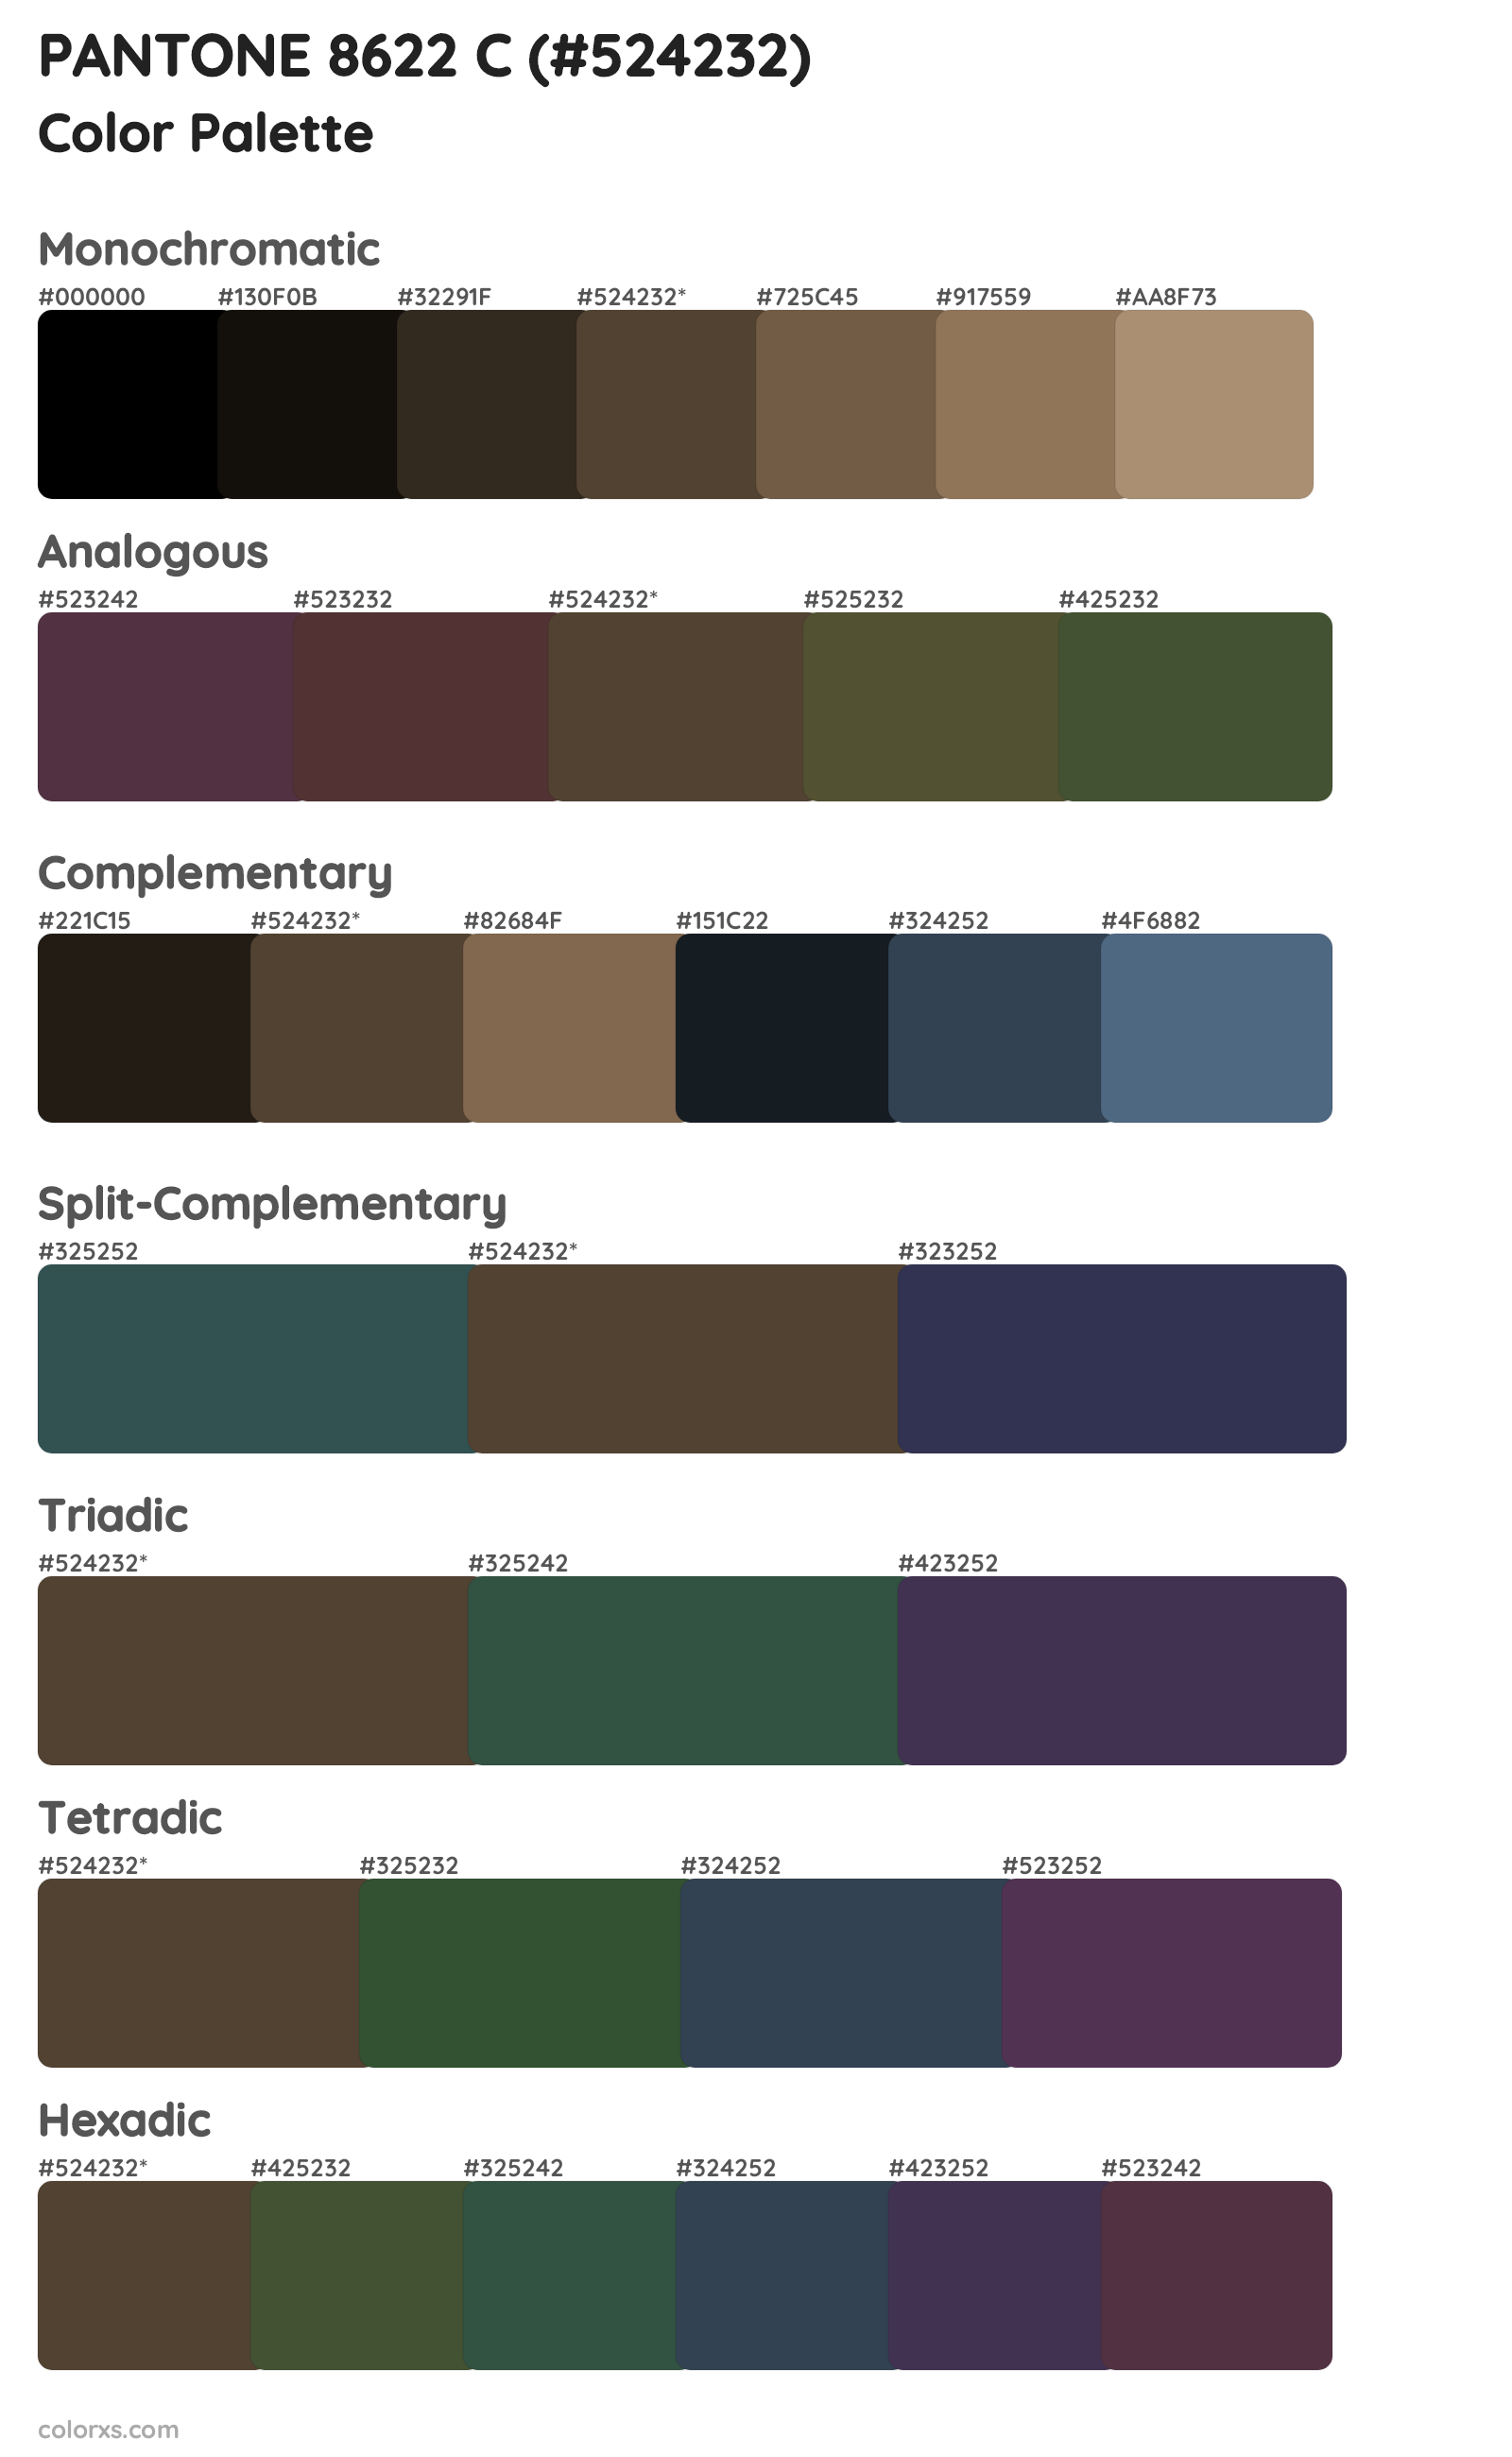 PANTONE 8622 C Color Scheme Palettes